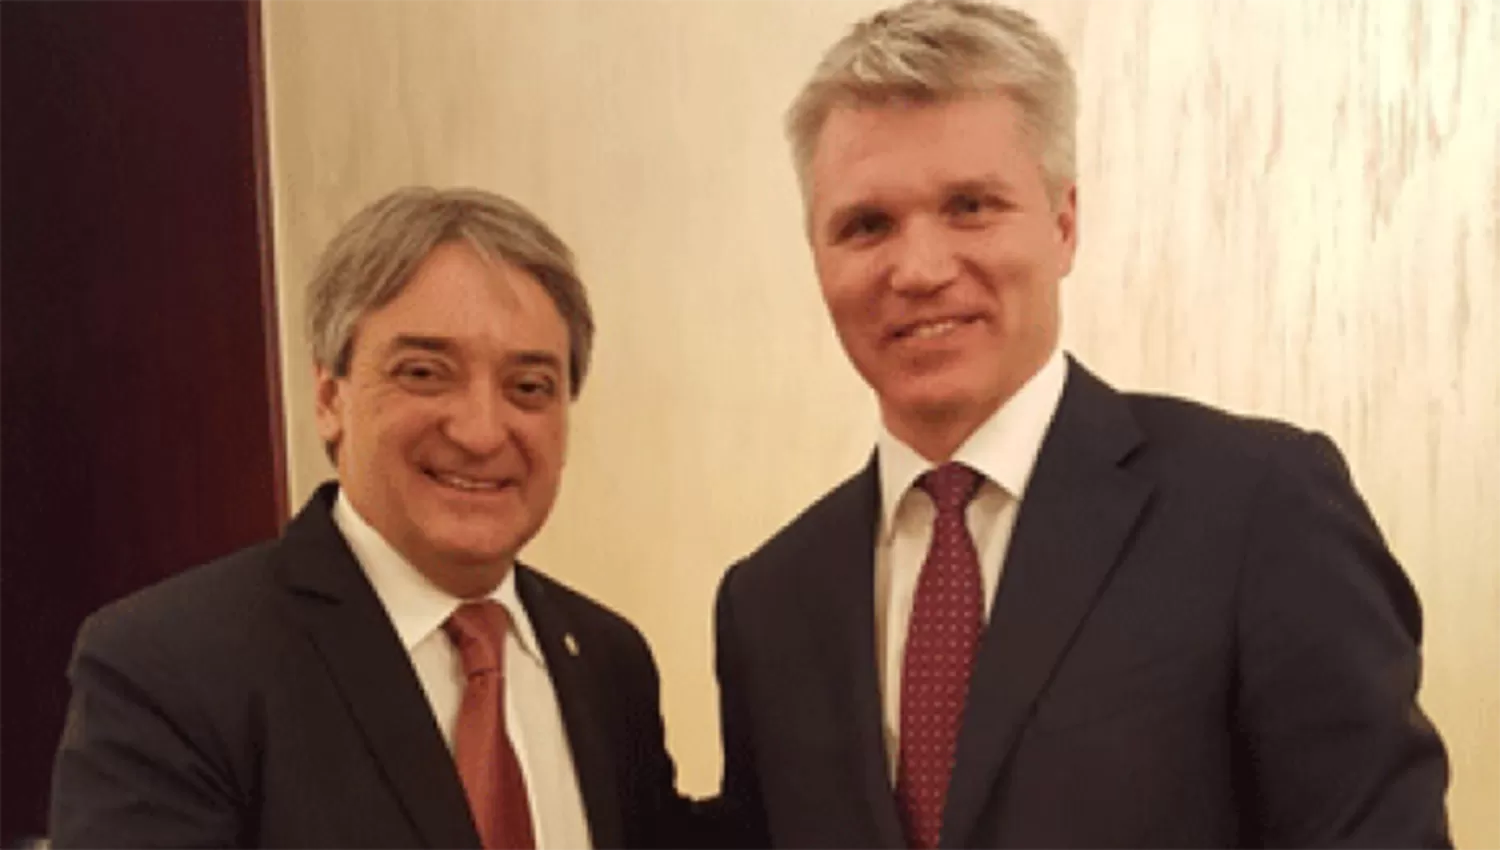 Cáceres, el secretario de Deportes uruguayo se reunió en Moscó con el Ministro ruso del área, Pável Kolobkov.
FOTO TOMADA DE www.ovaciondigital.com.uy